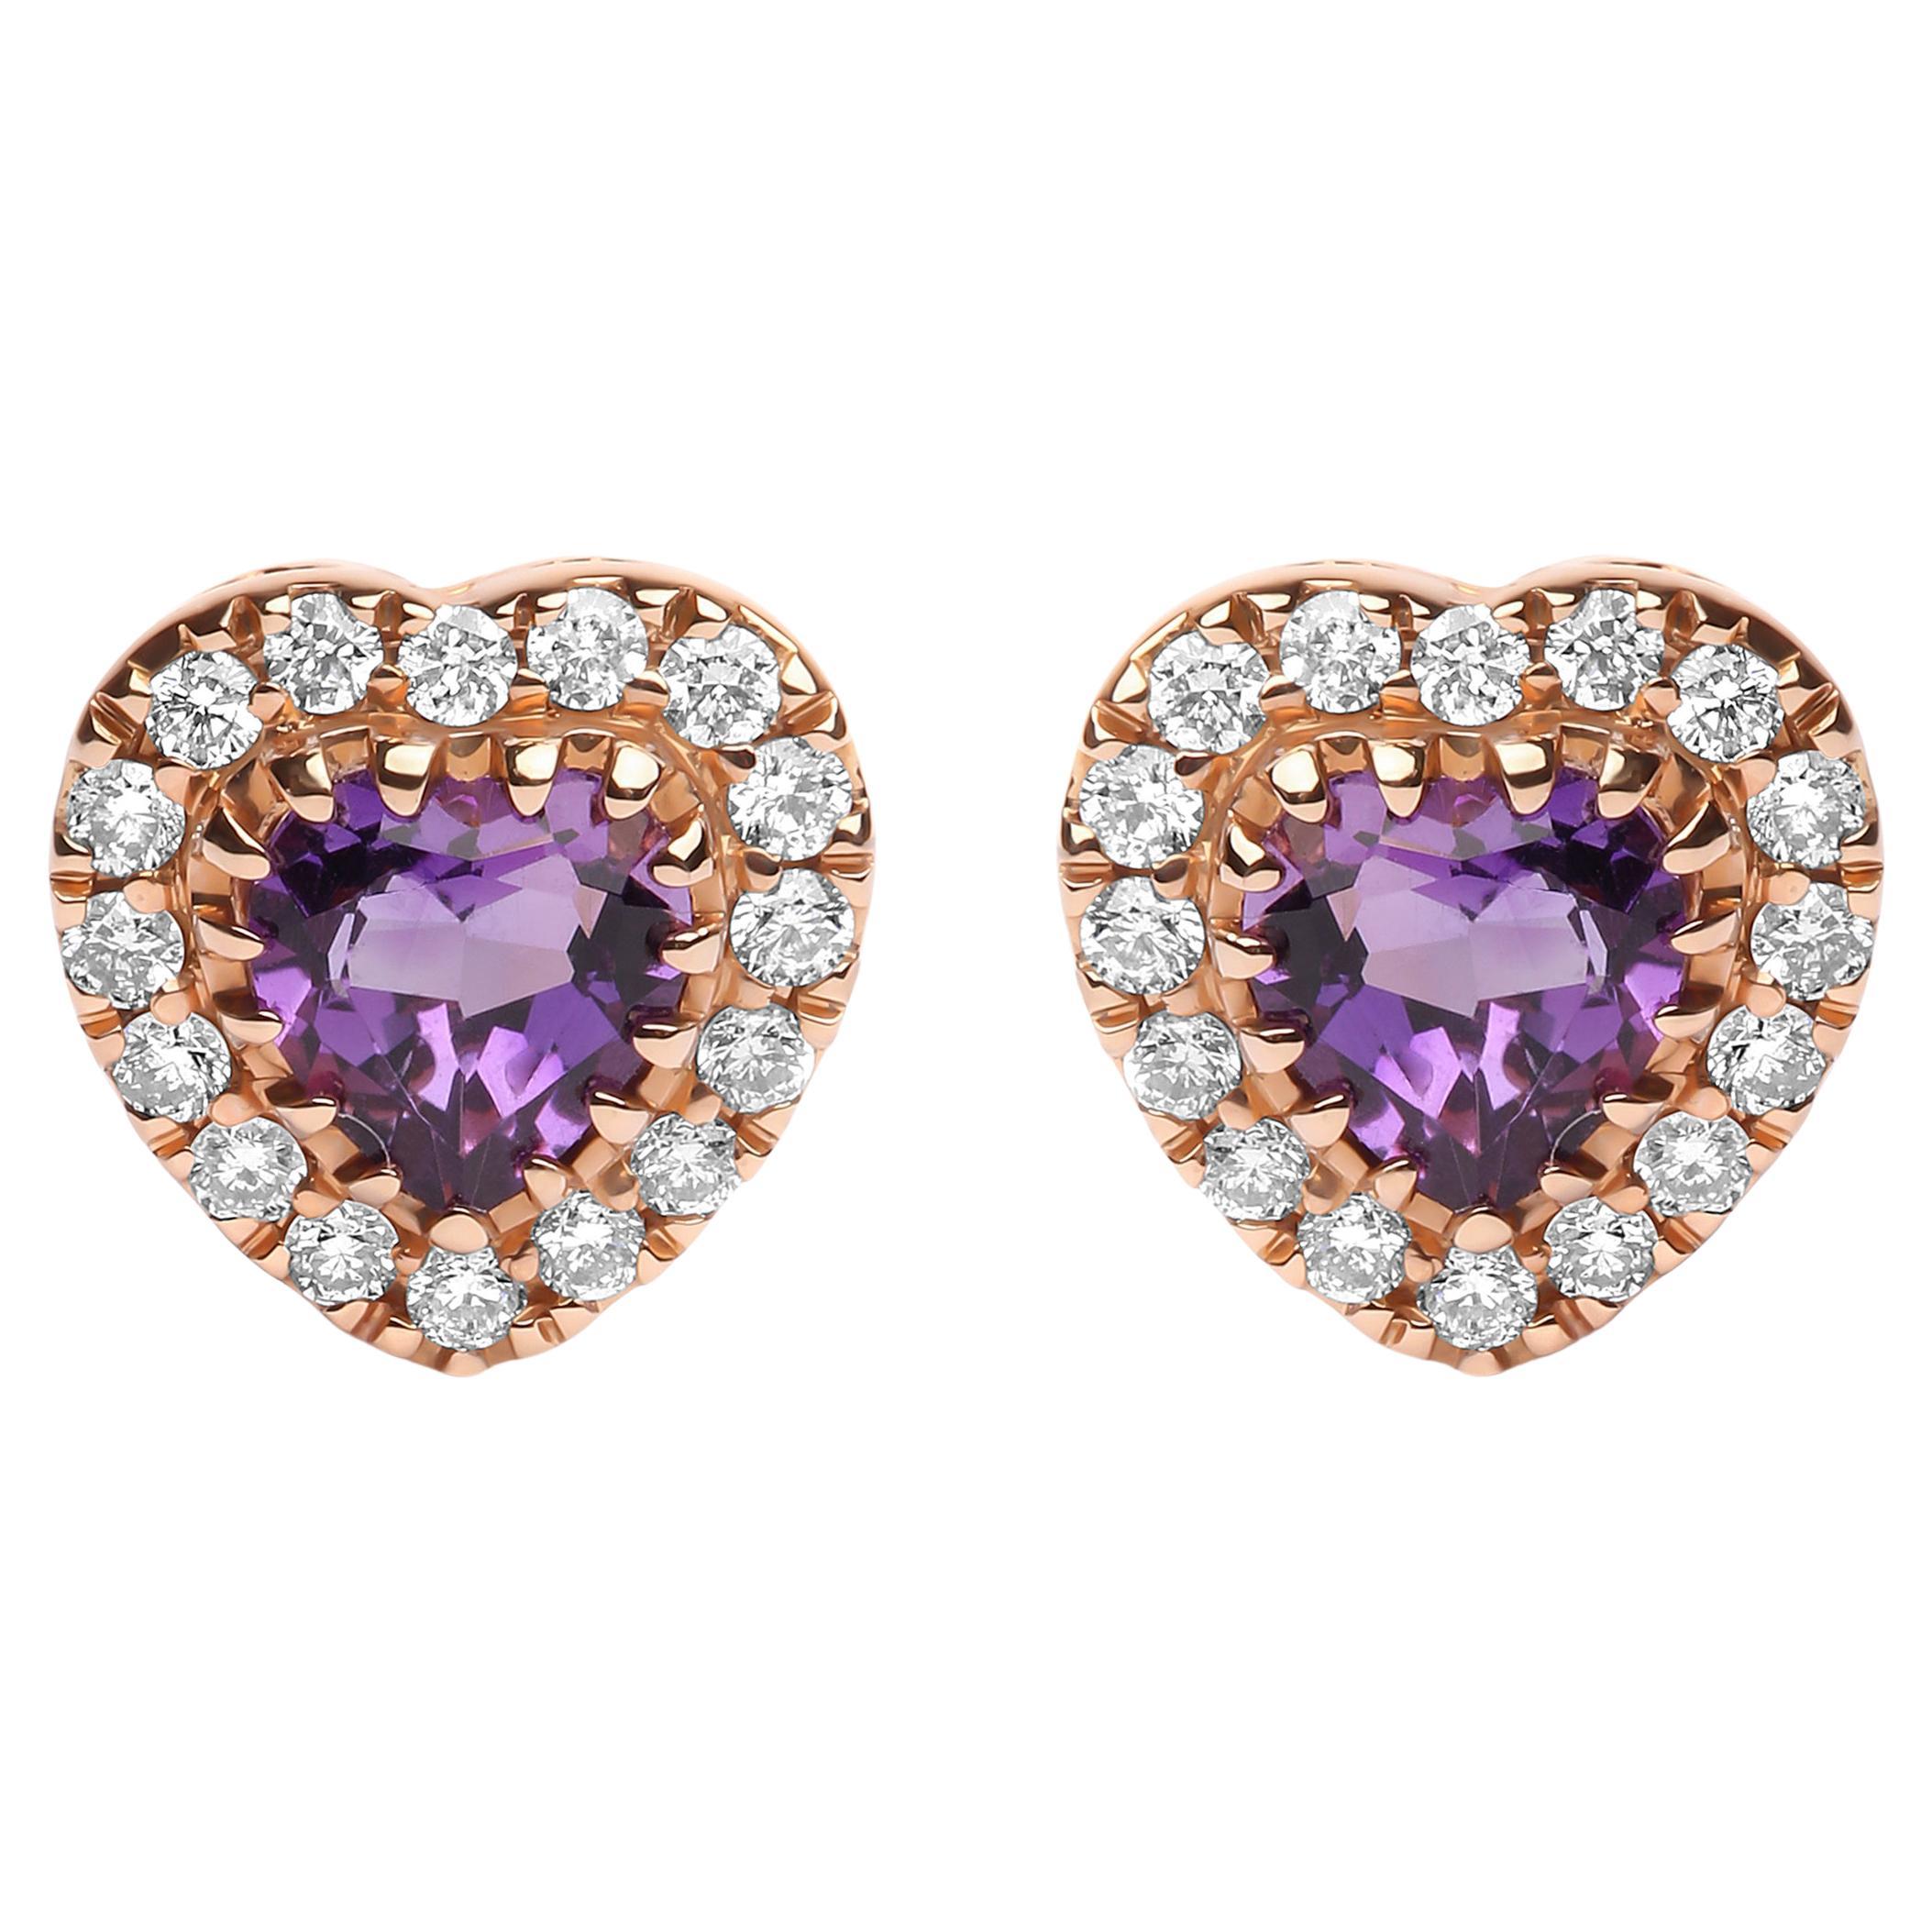 Clous d'oreilles en or bicolore 18 carats avec diamants de 1/6 carat et améthyste violette